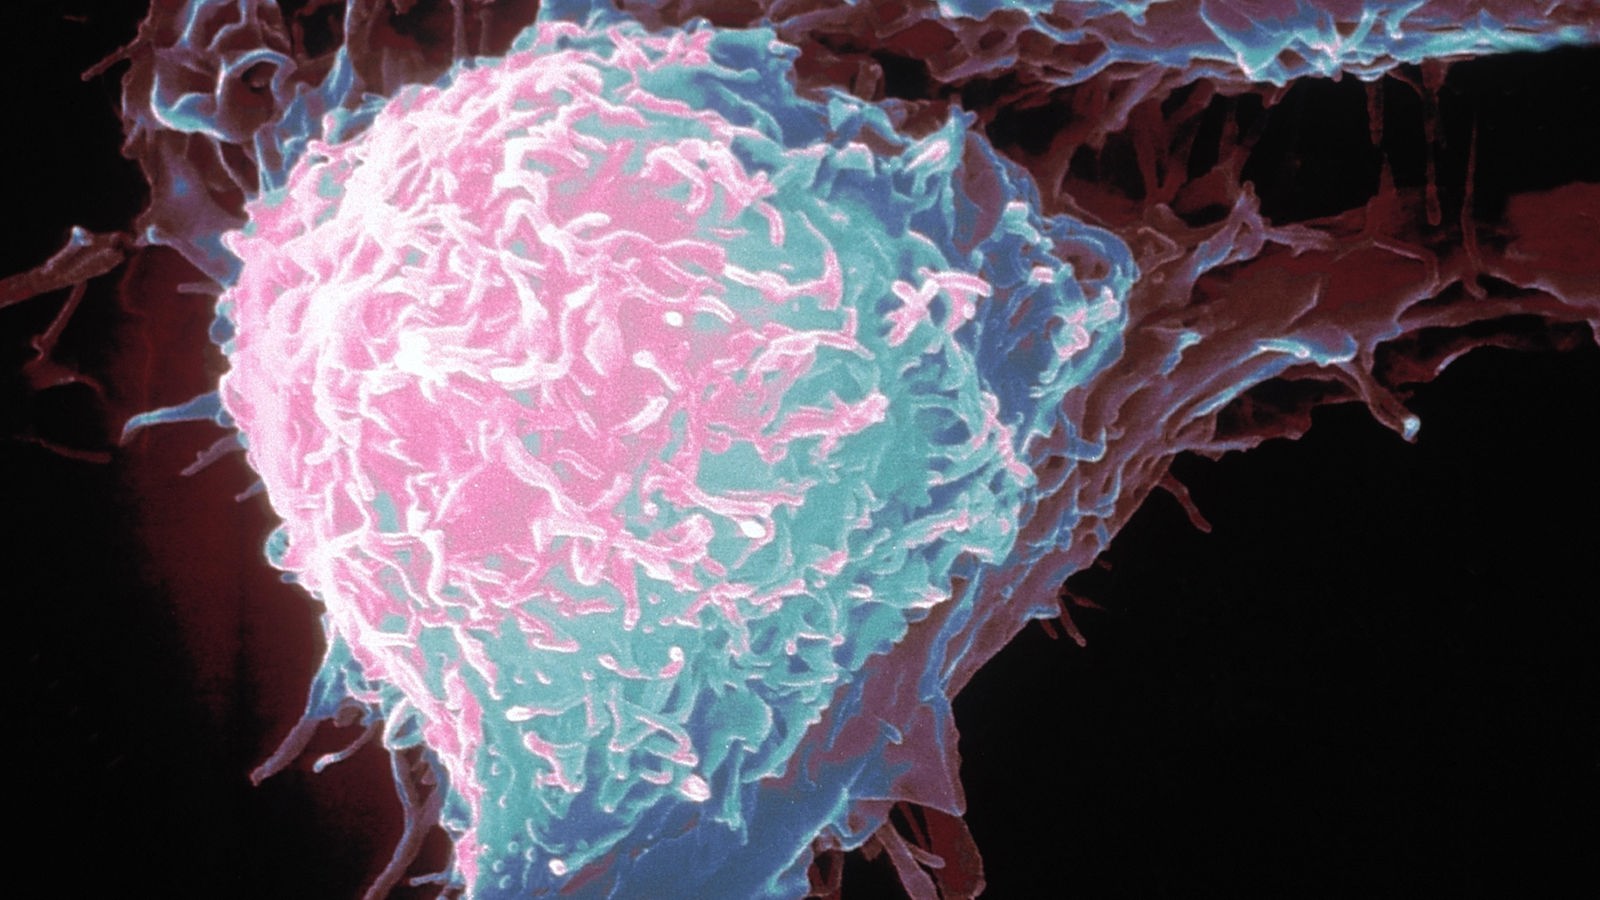 Krankheiten: Krebs - Krankheiten - Gesellschaft - Planet Wissen